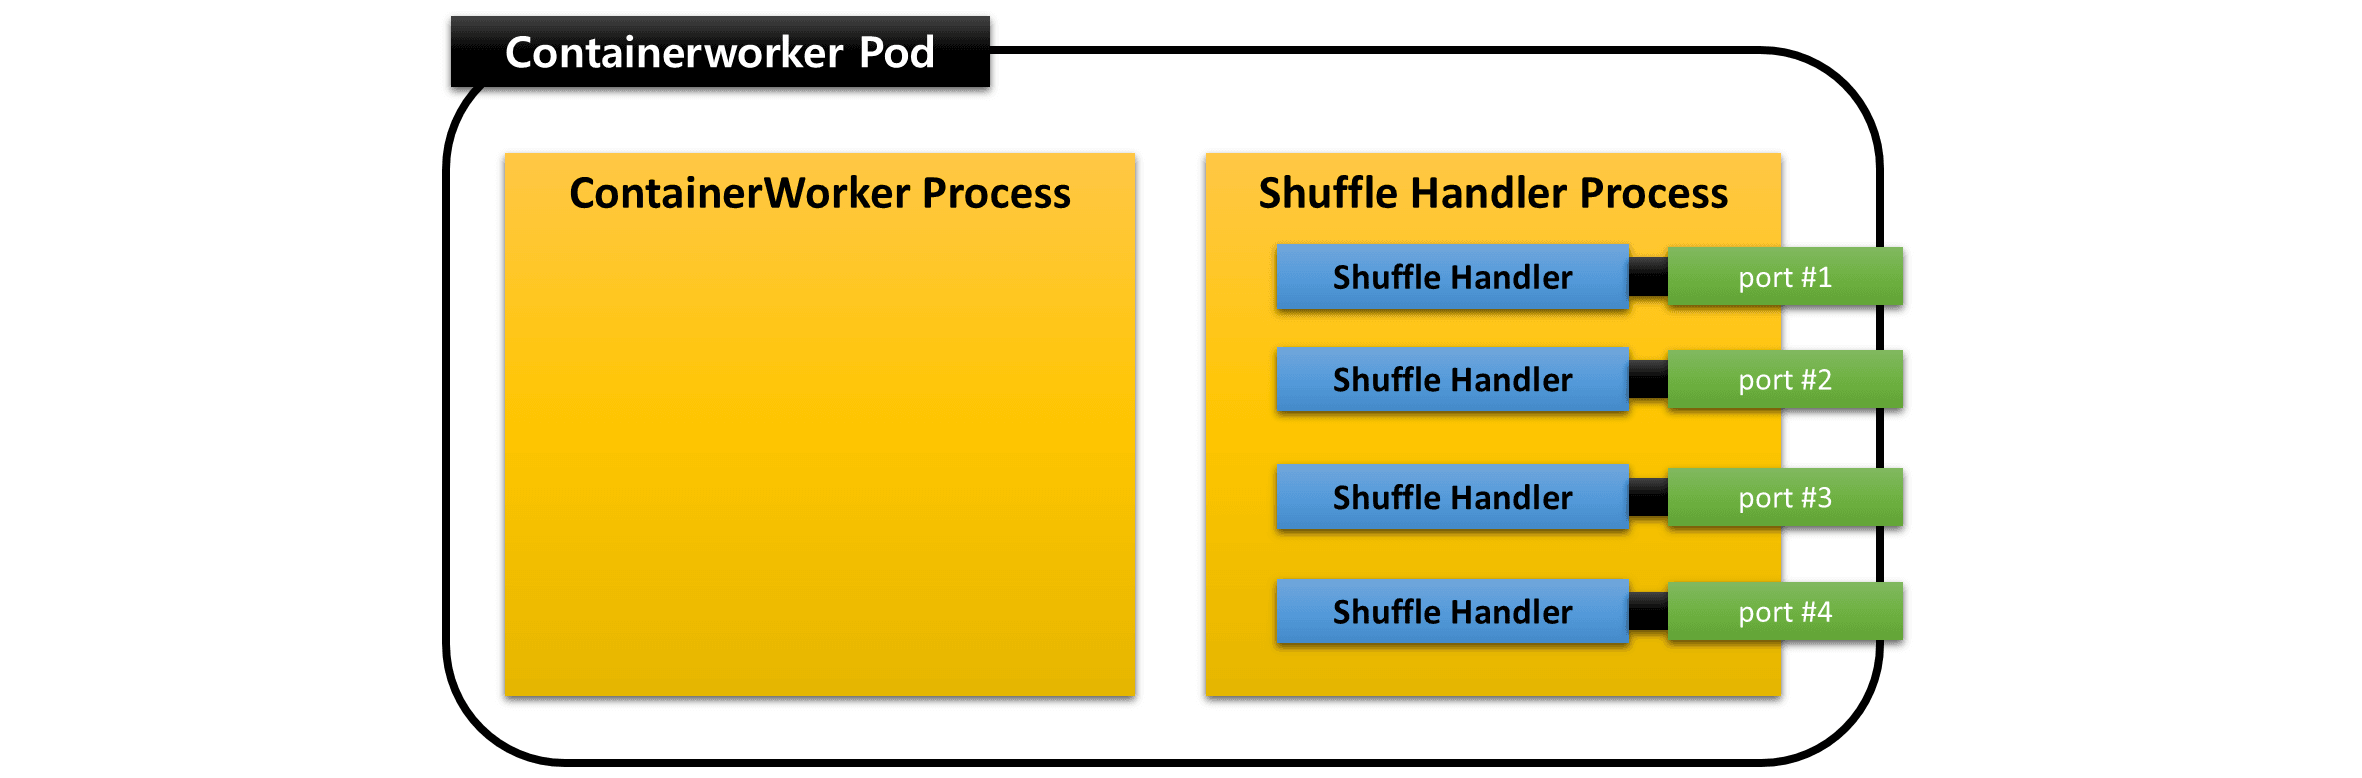 shufflehandler.process.k8s